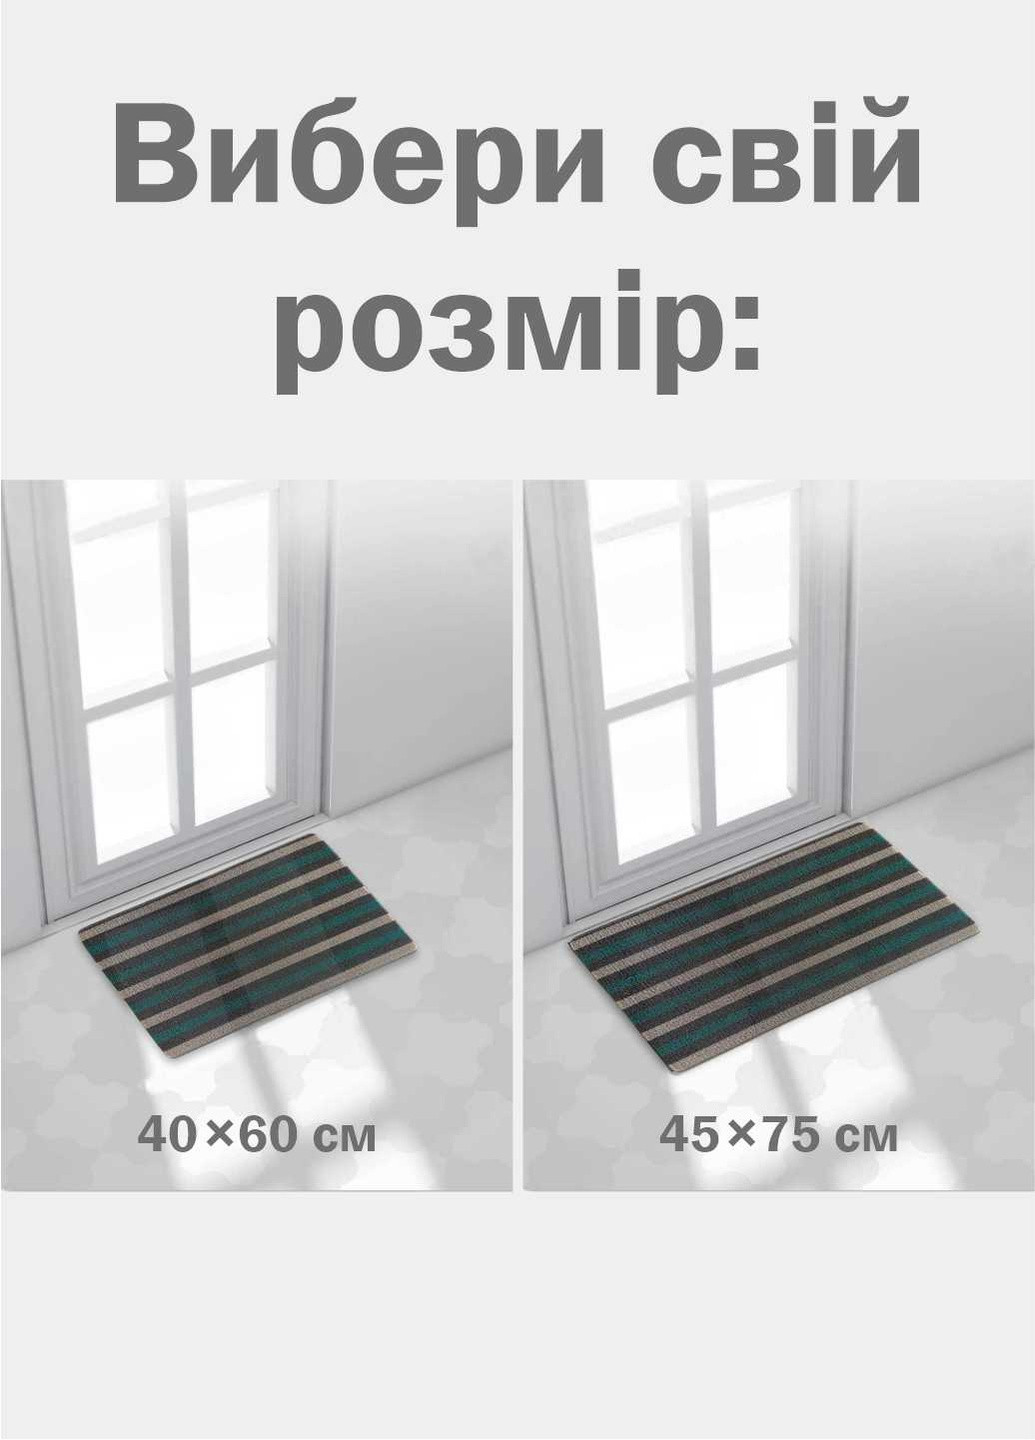 Дверний килимок з петлевою щетиною розміром 40 x 60 для внутрішнього зовнішнього входу - зелена полоска Lovely Svi (254545874)